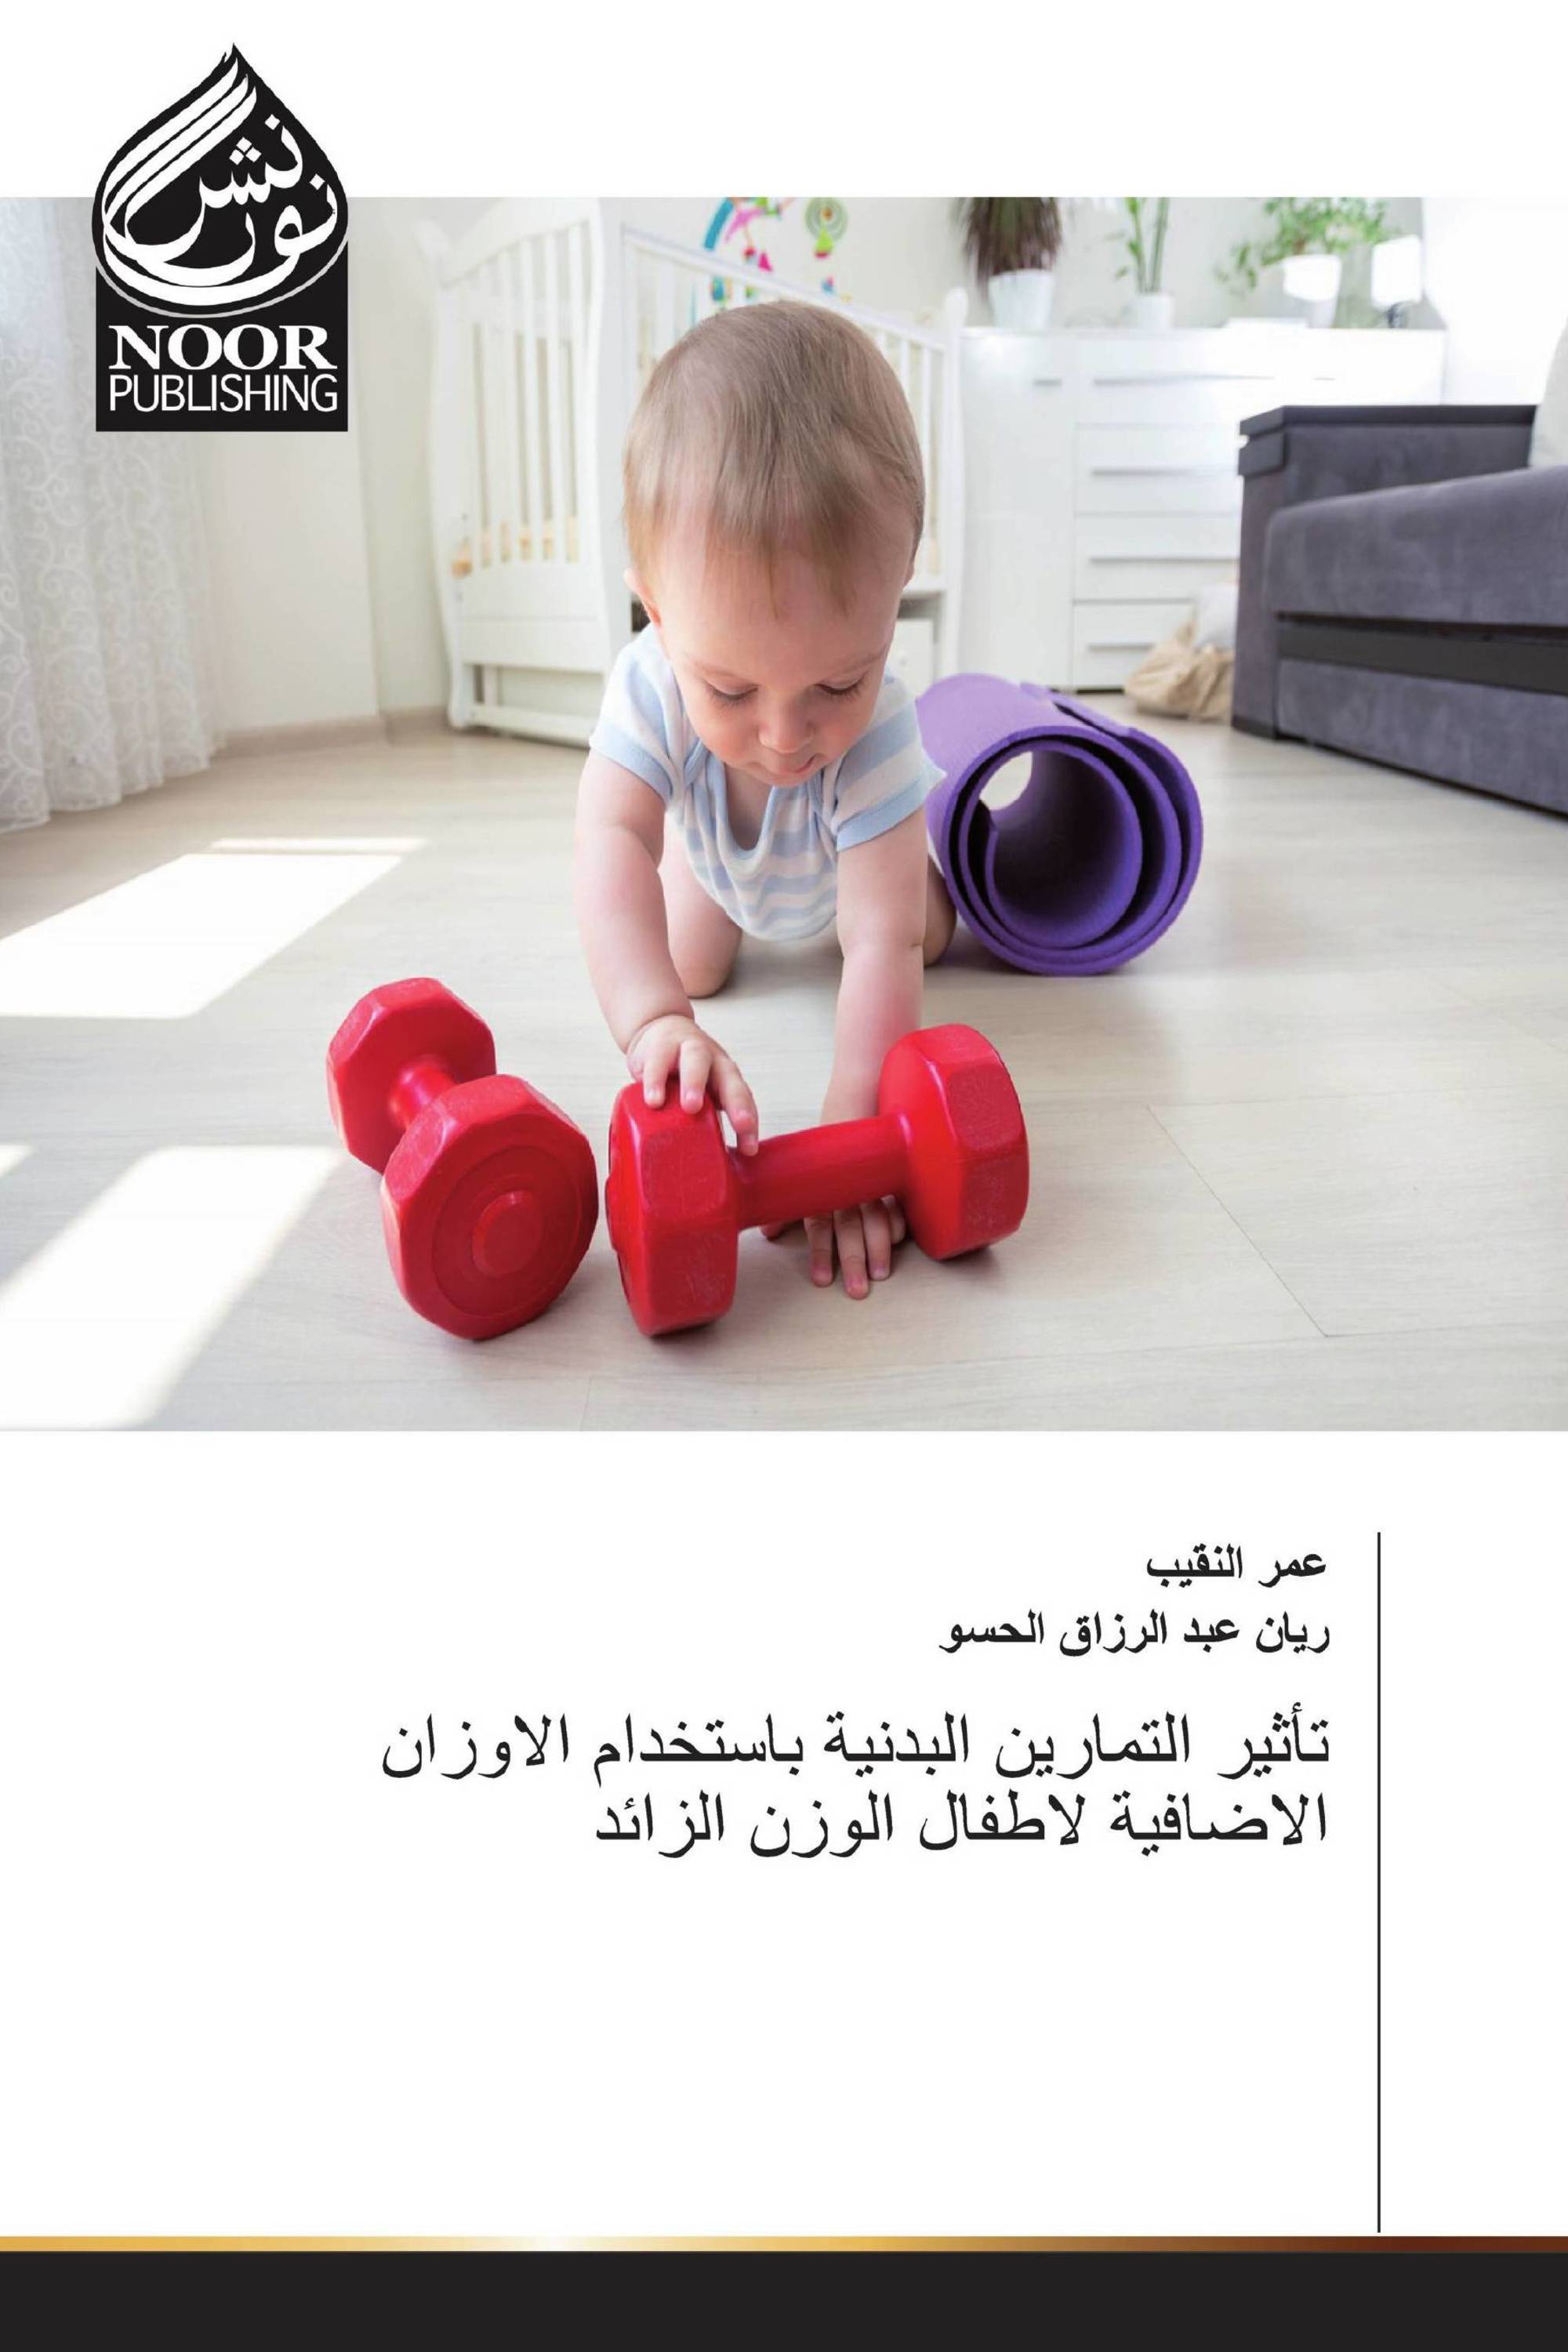 تأثير التمارين البدنية باستخدام الاوزان الاضافية لاطفال الوزن الزائد